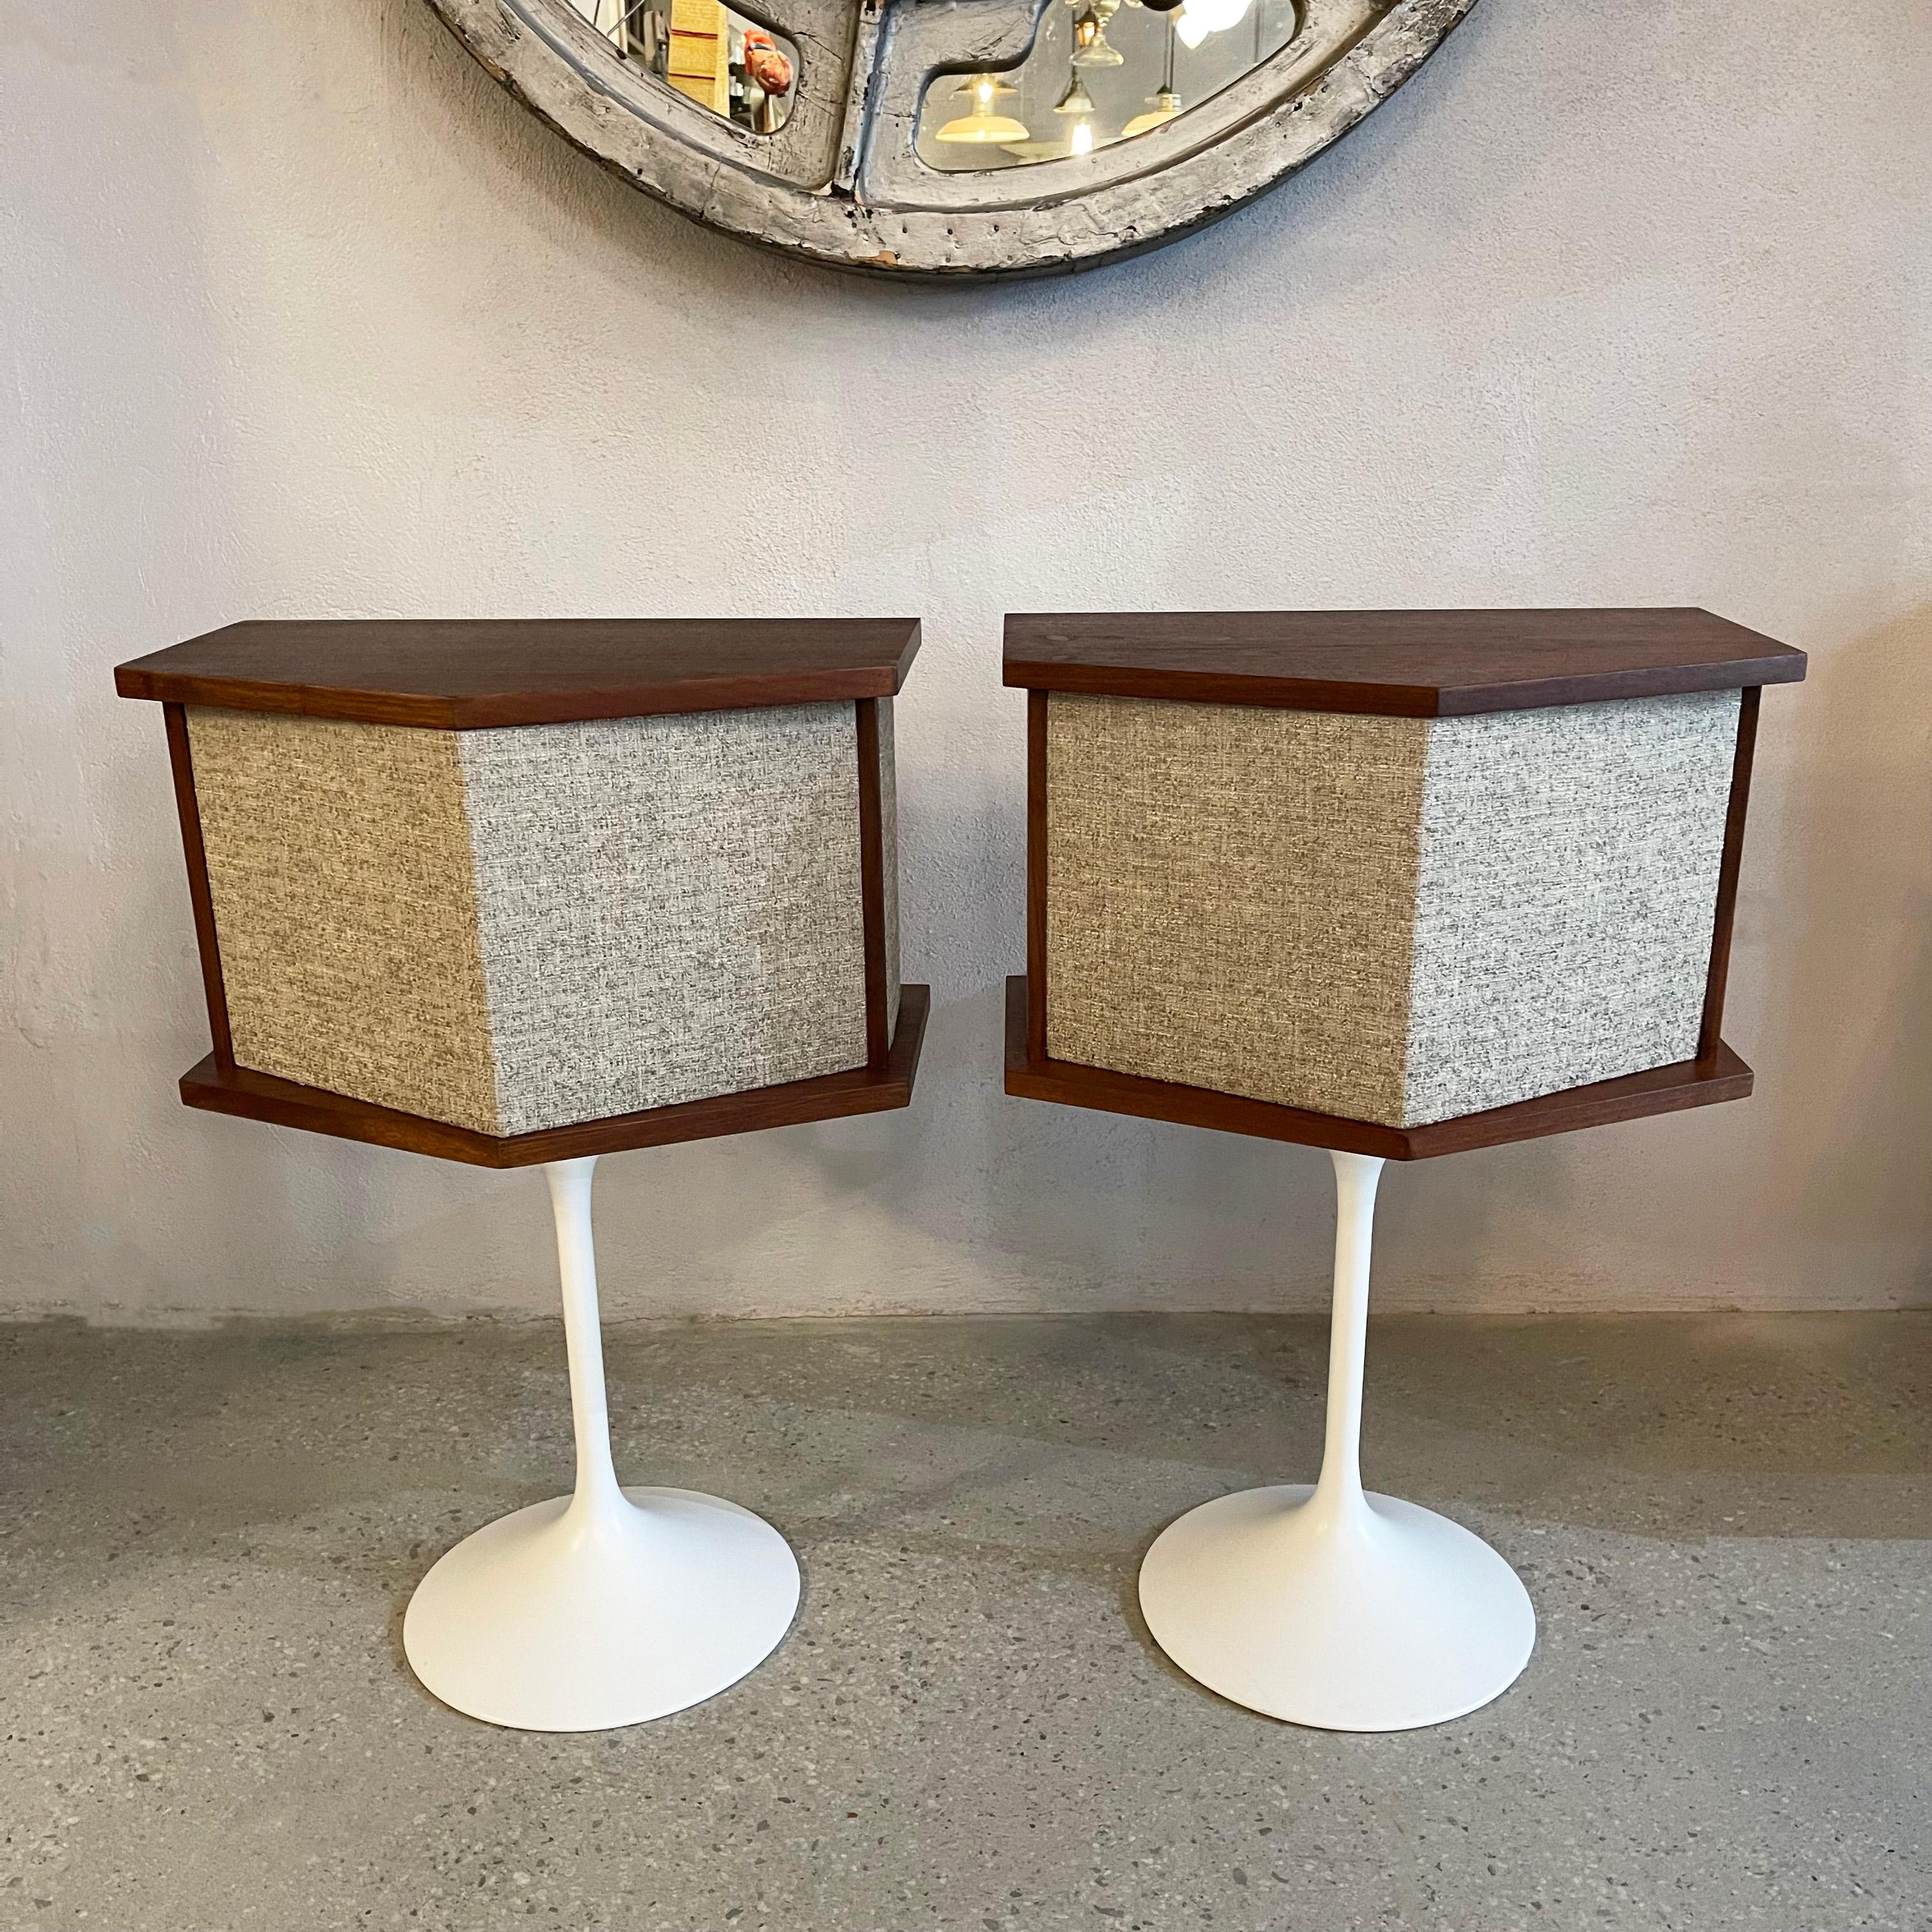 Ein Paar neu bearbeitete und gepolsterte Lautsprecher der Serie Bose 901 aus der Mitte des Jahrhunderts auf Tulpensockeln, entworfen von dem finnisch-amerikanischen Designer und Architekten Eero Saarinen, um 1968. Die Lautsprecher haben einen Rahmen